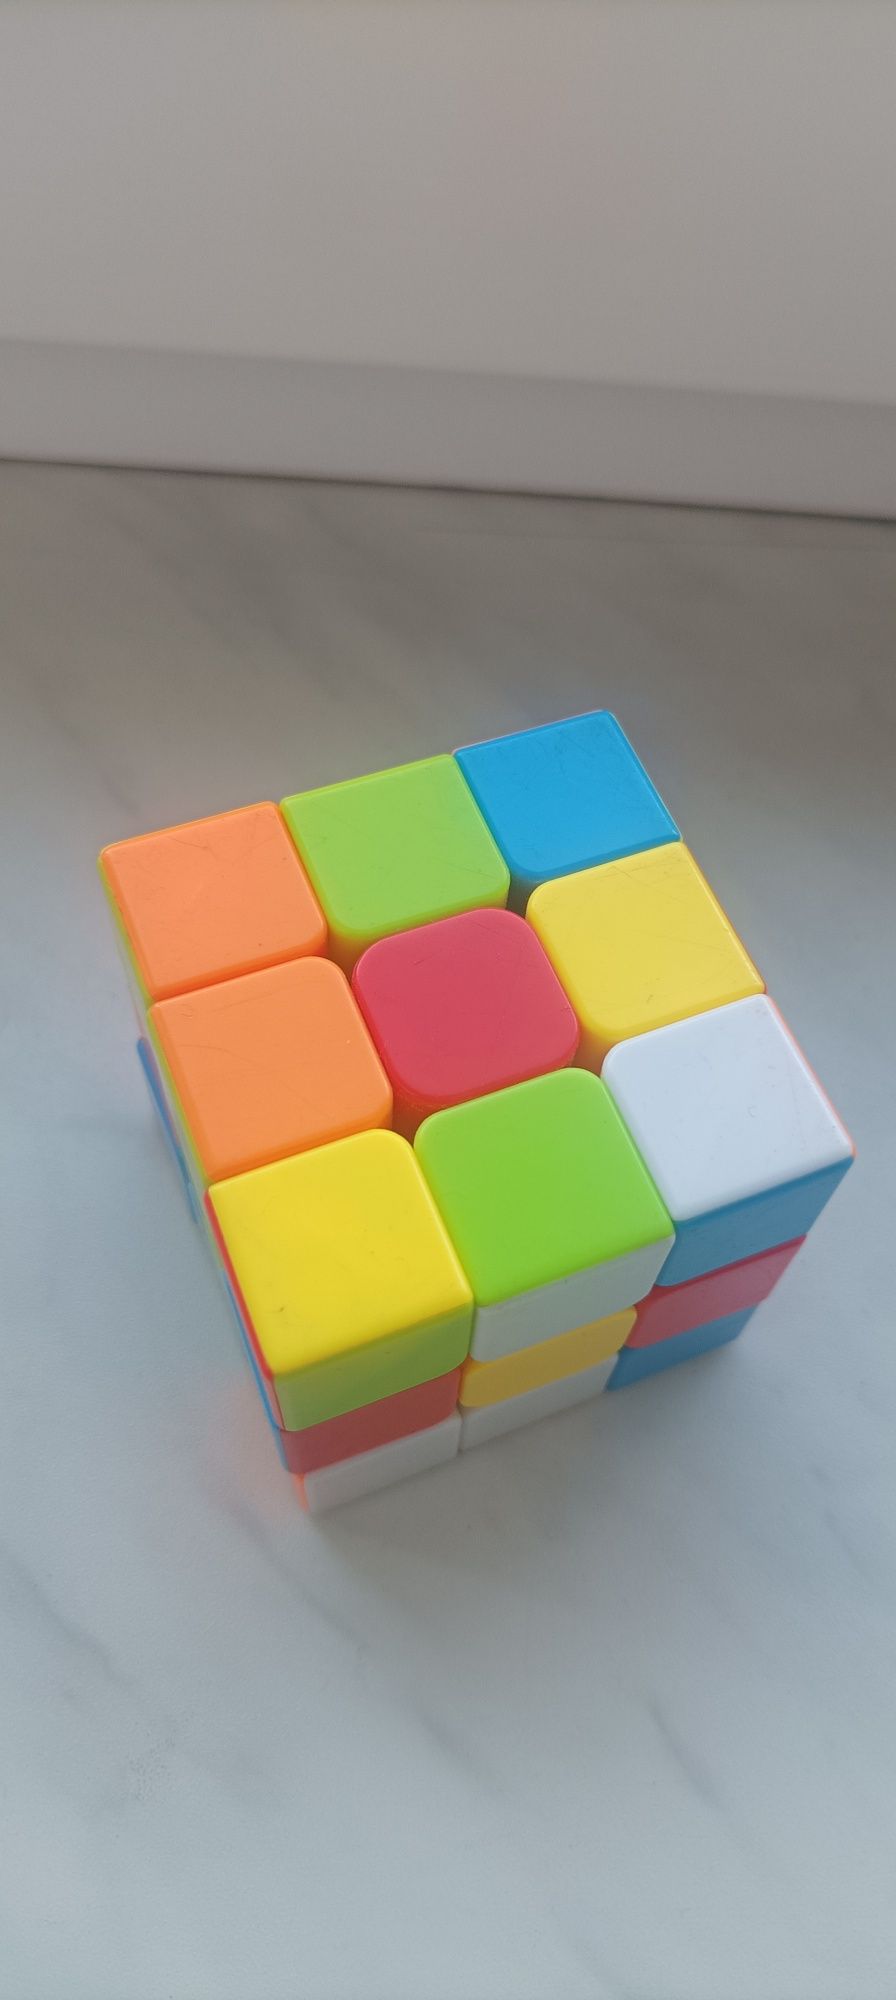 Używana pomieszana kostka Rubika